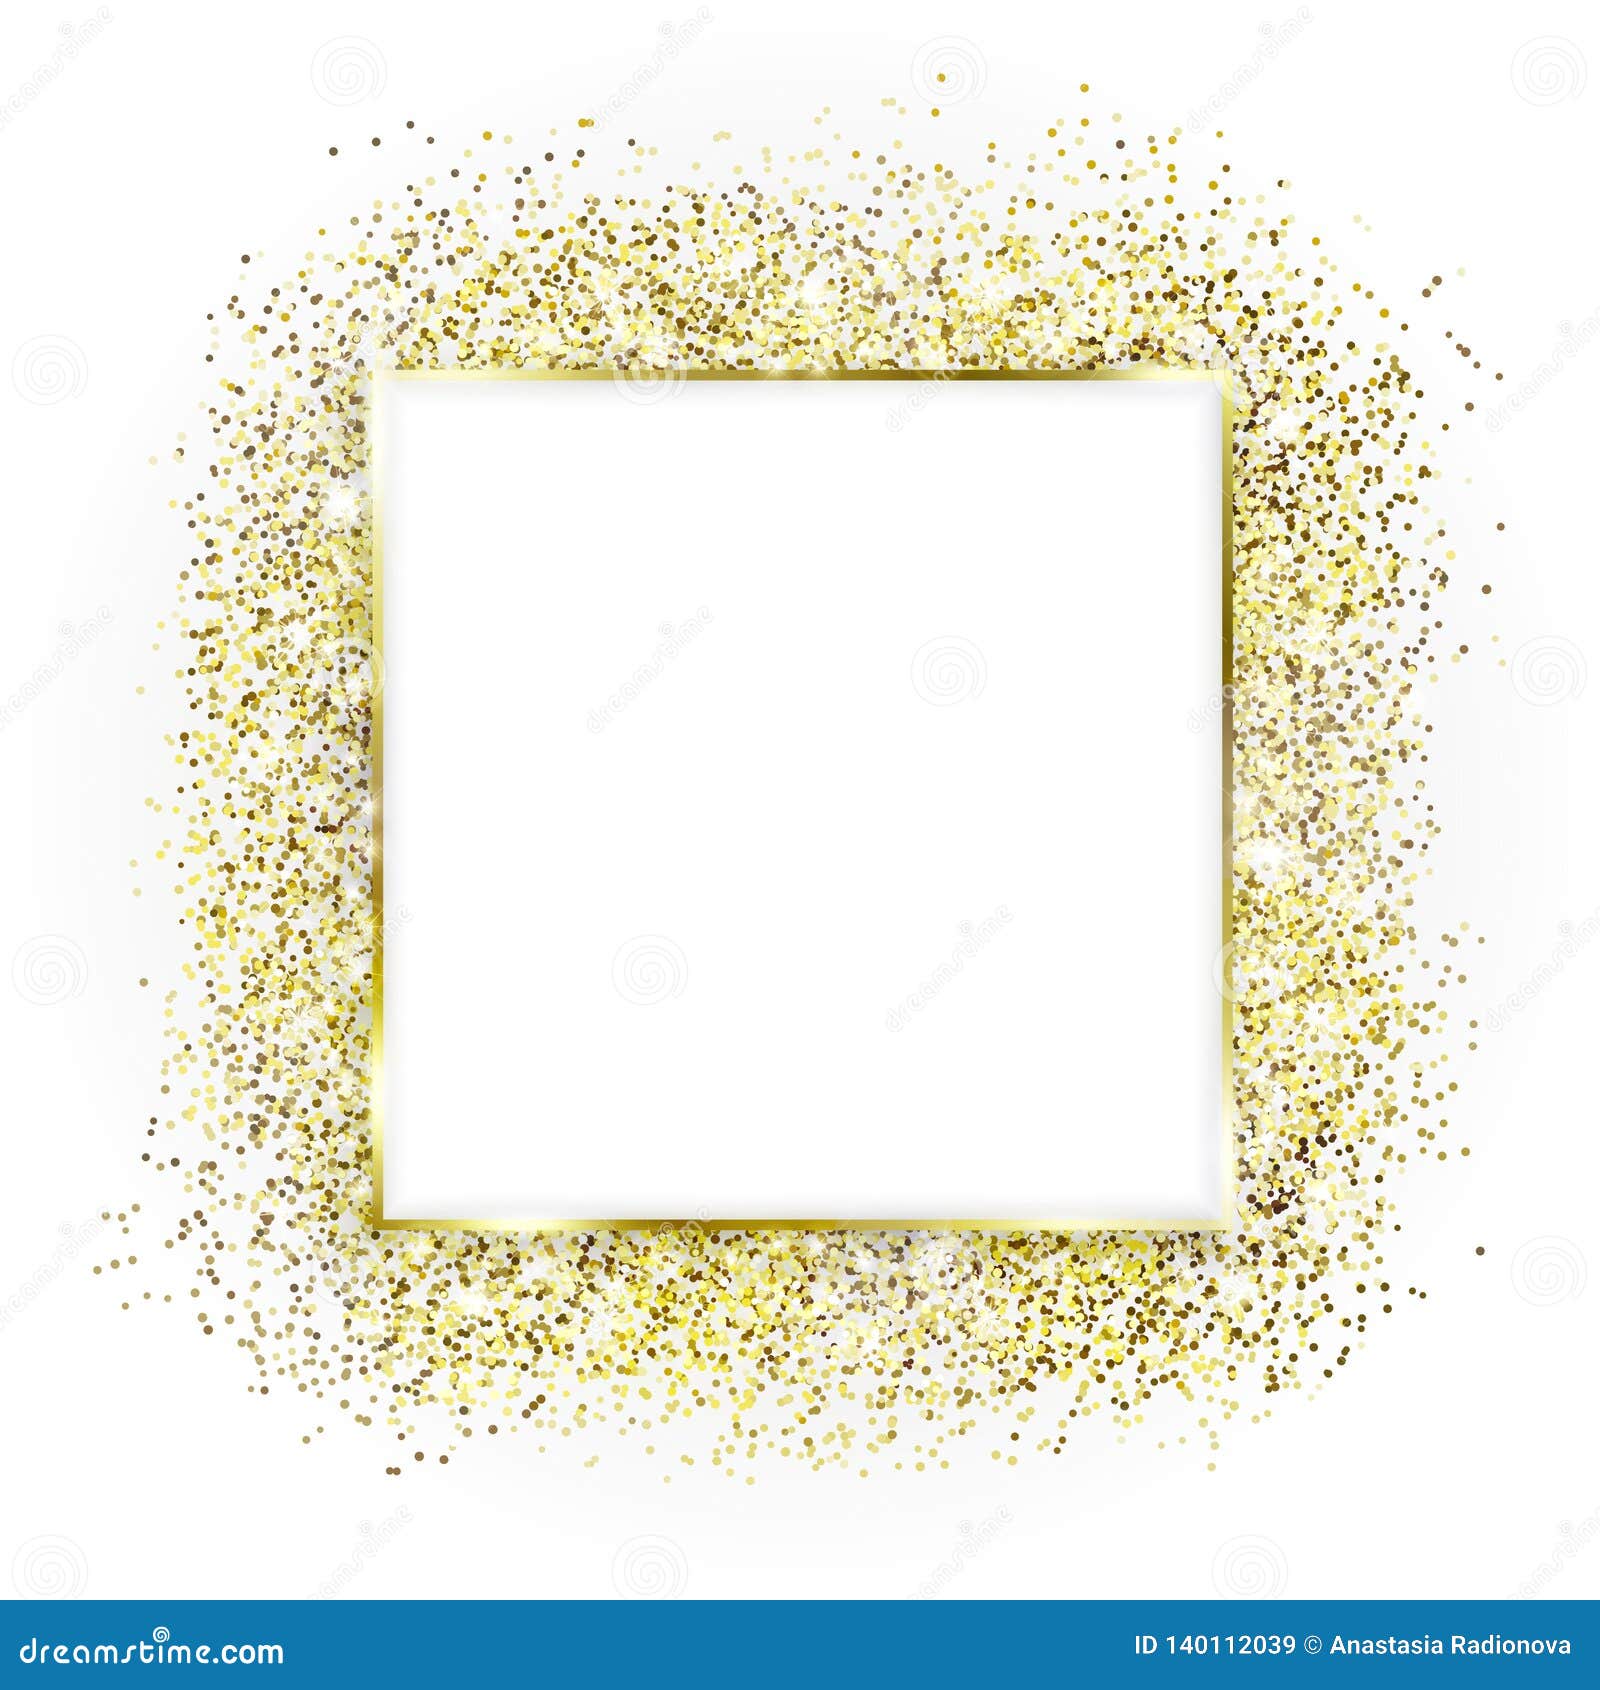 Khung vuông vàng và lấp lánh, hạt chất phát sáng: Làm mới bộ sưu tập của bạn với bức hình khung vuông vàng lấp lánh, được kết hợp với hạt chất phát sáng tạo nên độ sáng rực rỡ, thu hút mọi ánh nhìn. Bức hình này sẽ mang đến cho bạn sự thư giãn và niềm vui trong từng chi tiết và màu sắc.